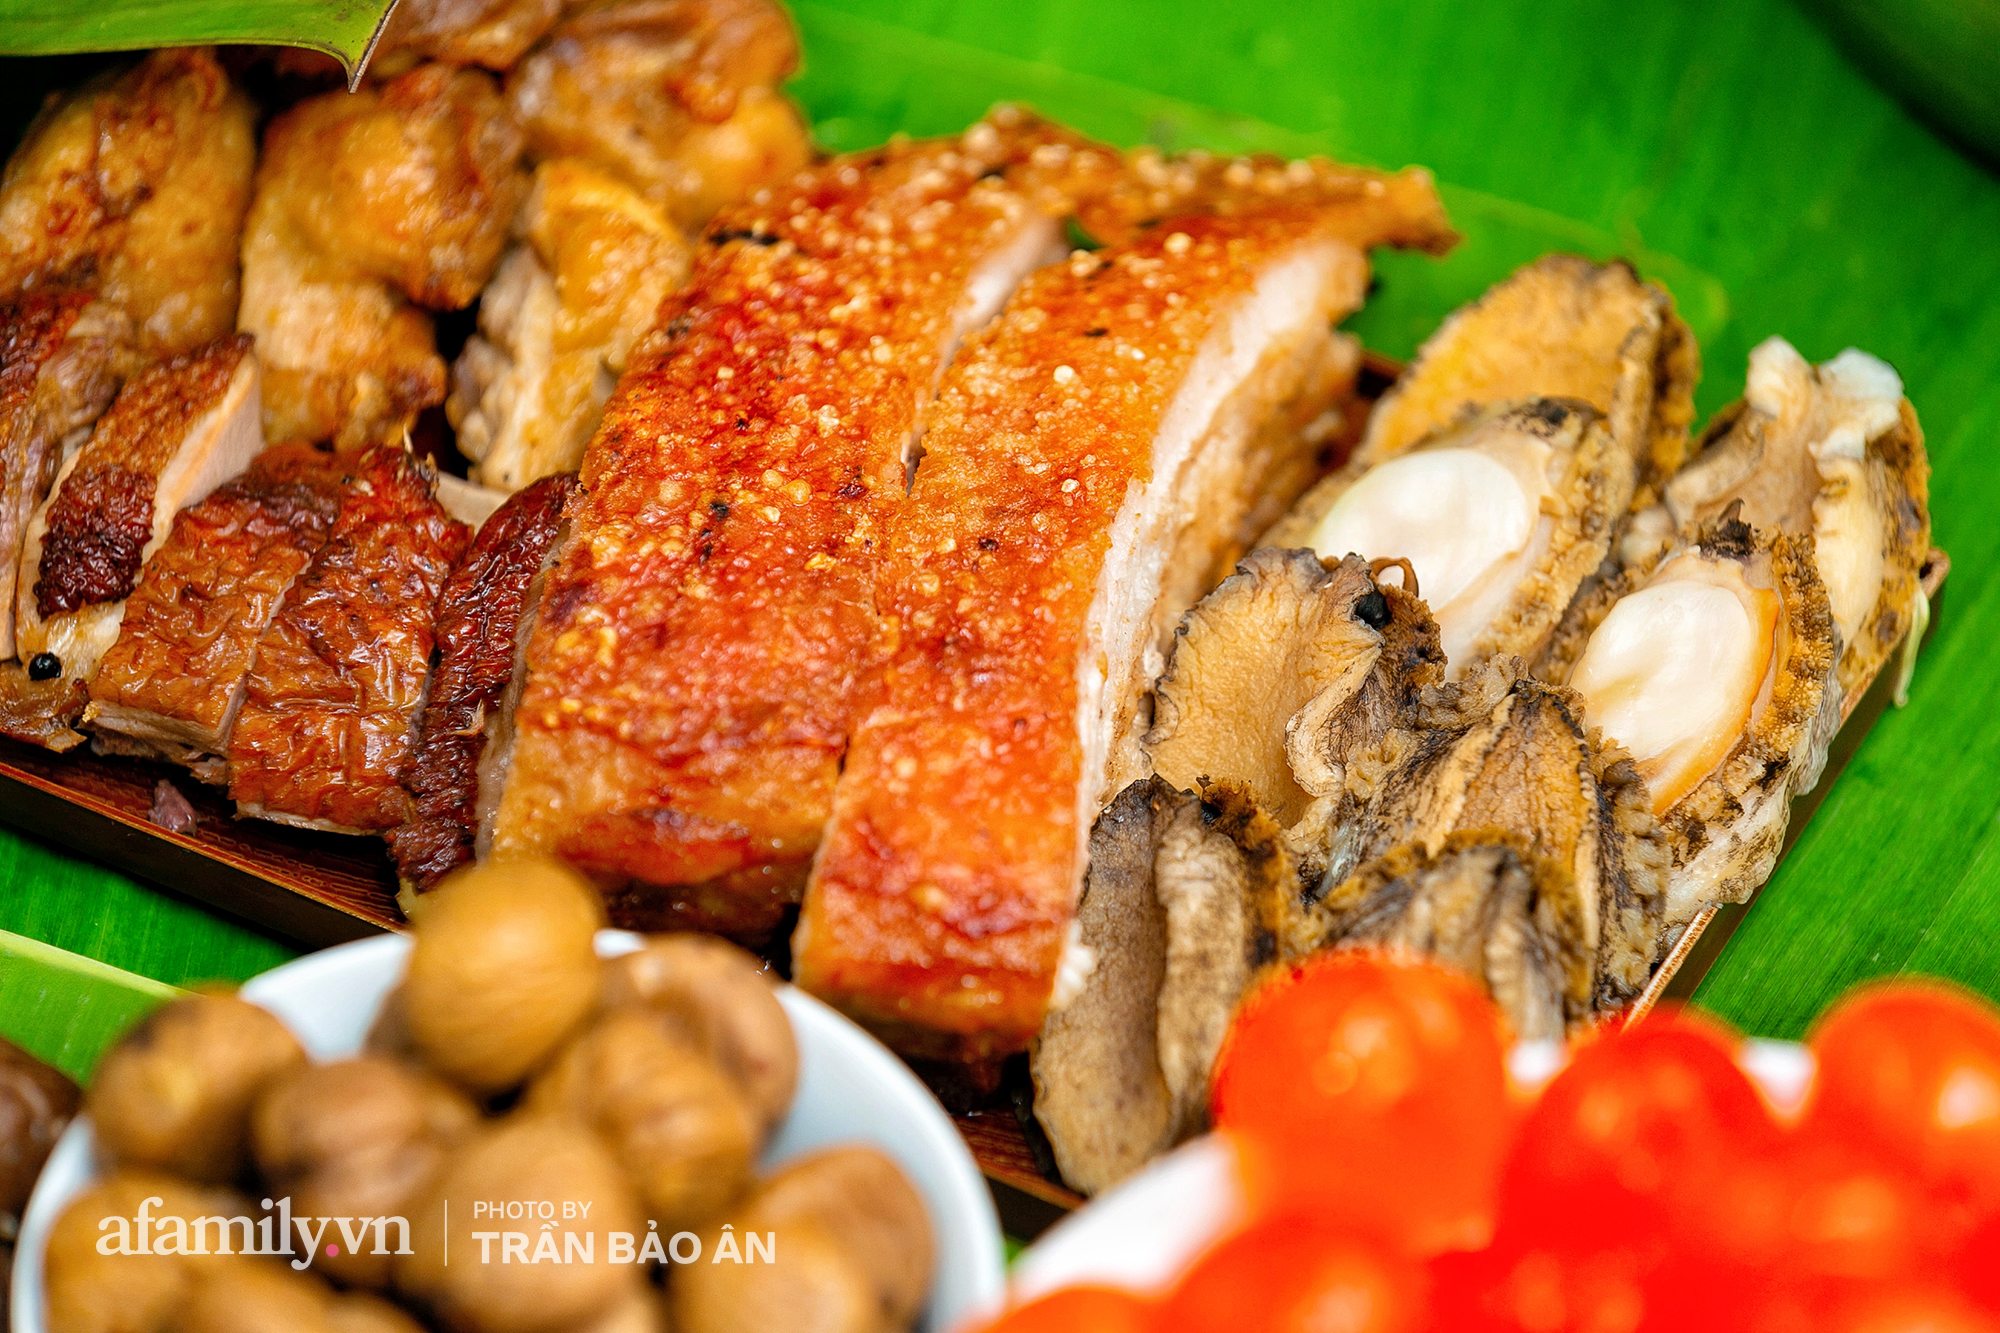 Tết Đoan Ngọ tại lò bánh Bá Trạng lâu đời nhất Sài Gòn, một cặp bánh có giá lên tới 1 triệu đồng với bào ngư, heo quay, sò điệp mà một năm chỉ được ăn duy nhất 1 lần! - Ảnh 2.